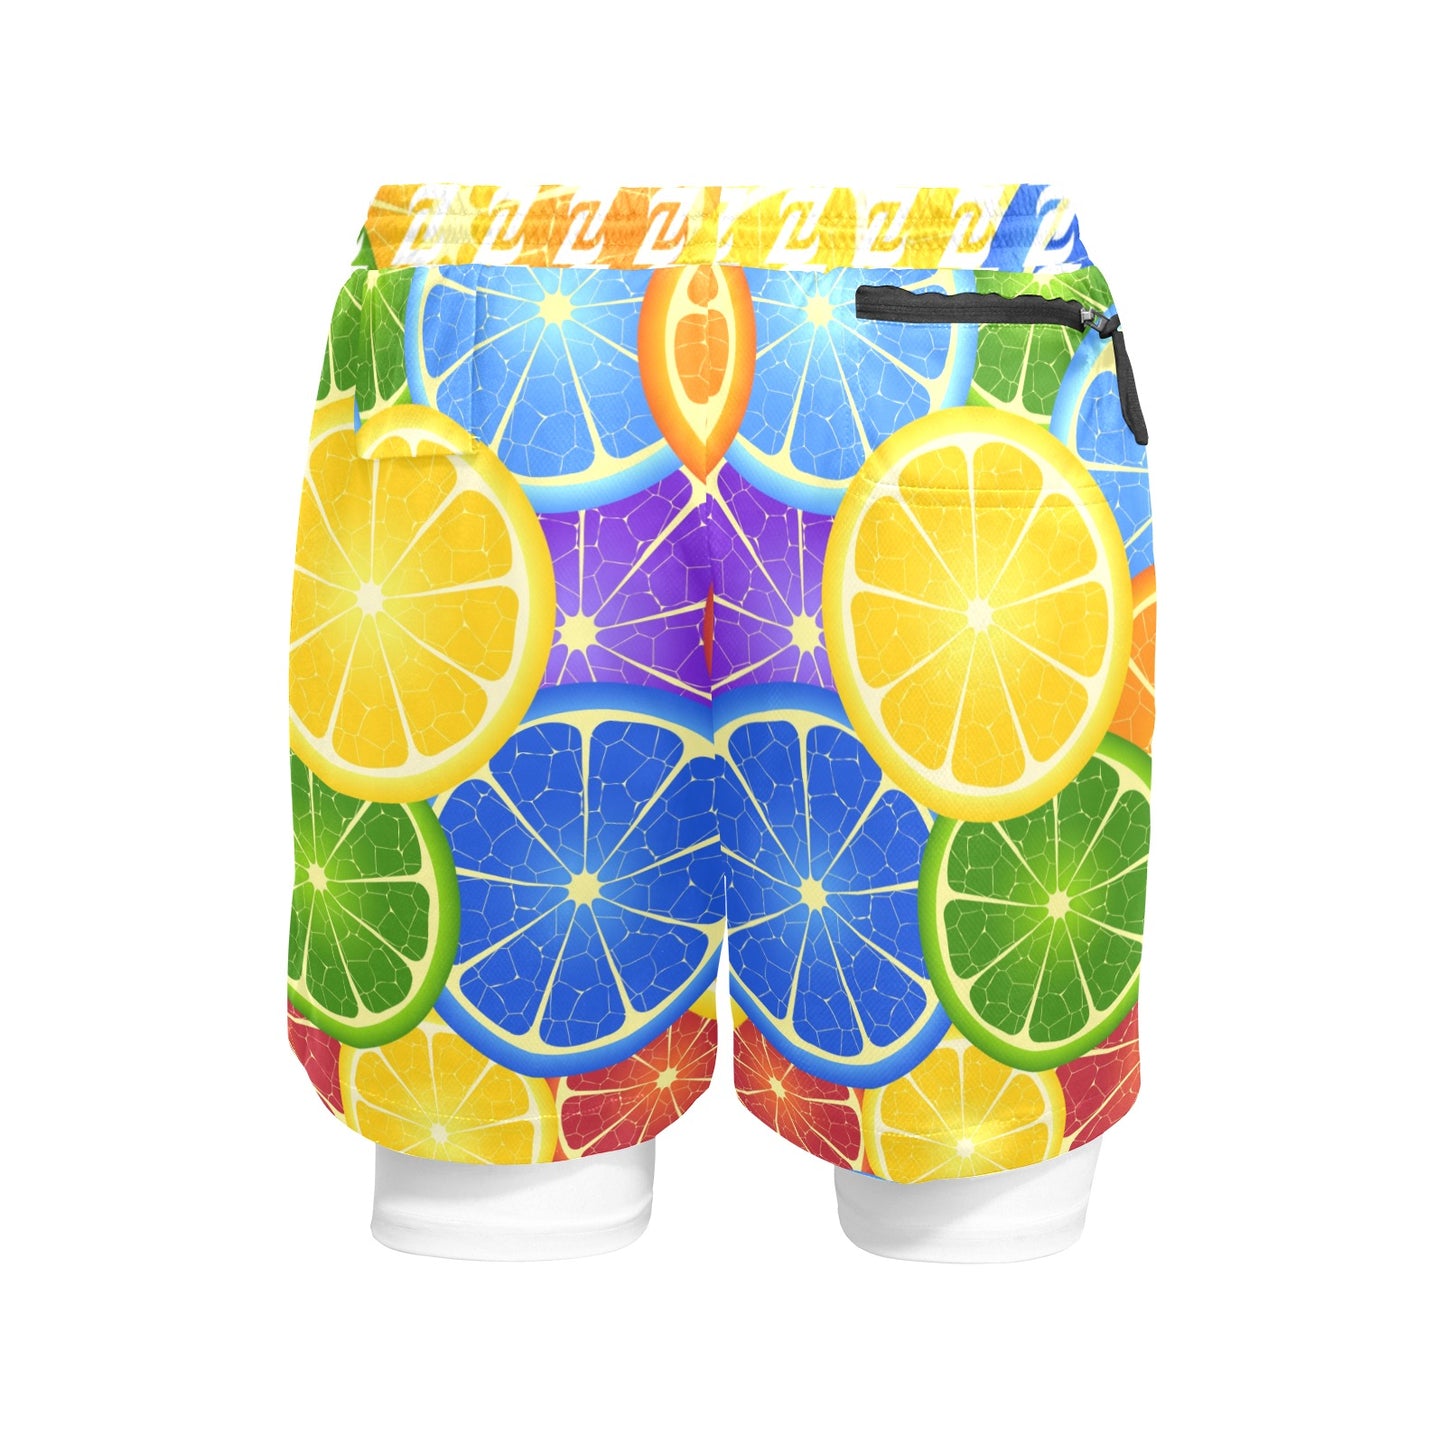 Zen Shorts with Liner - Citrus